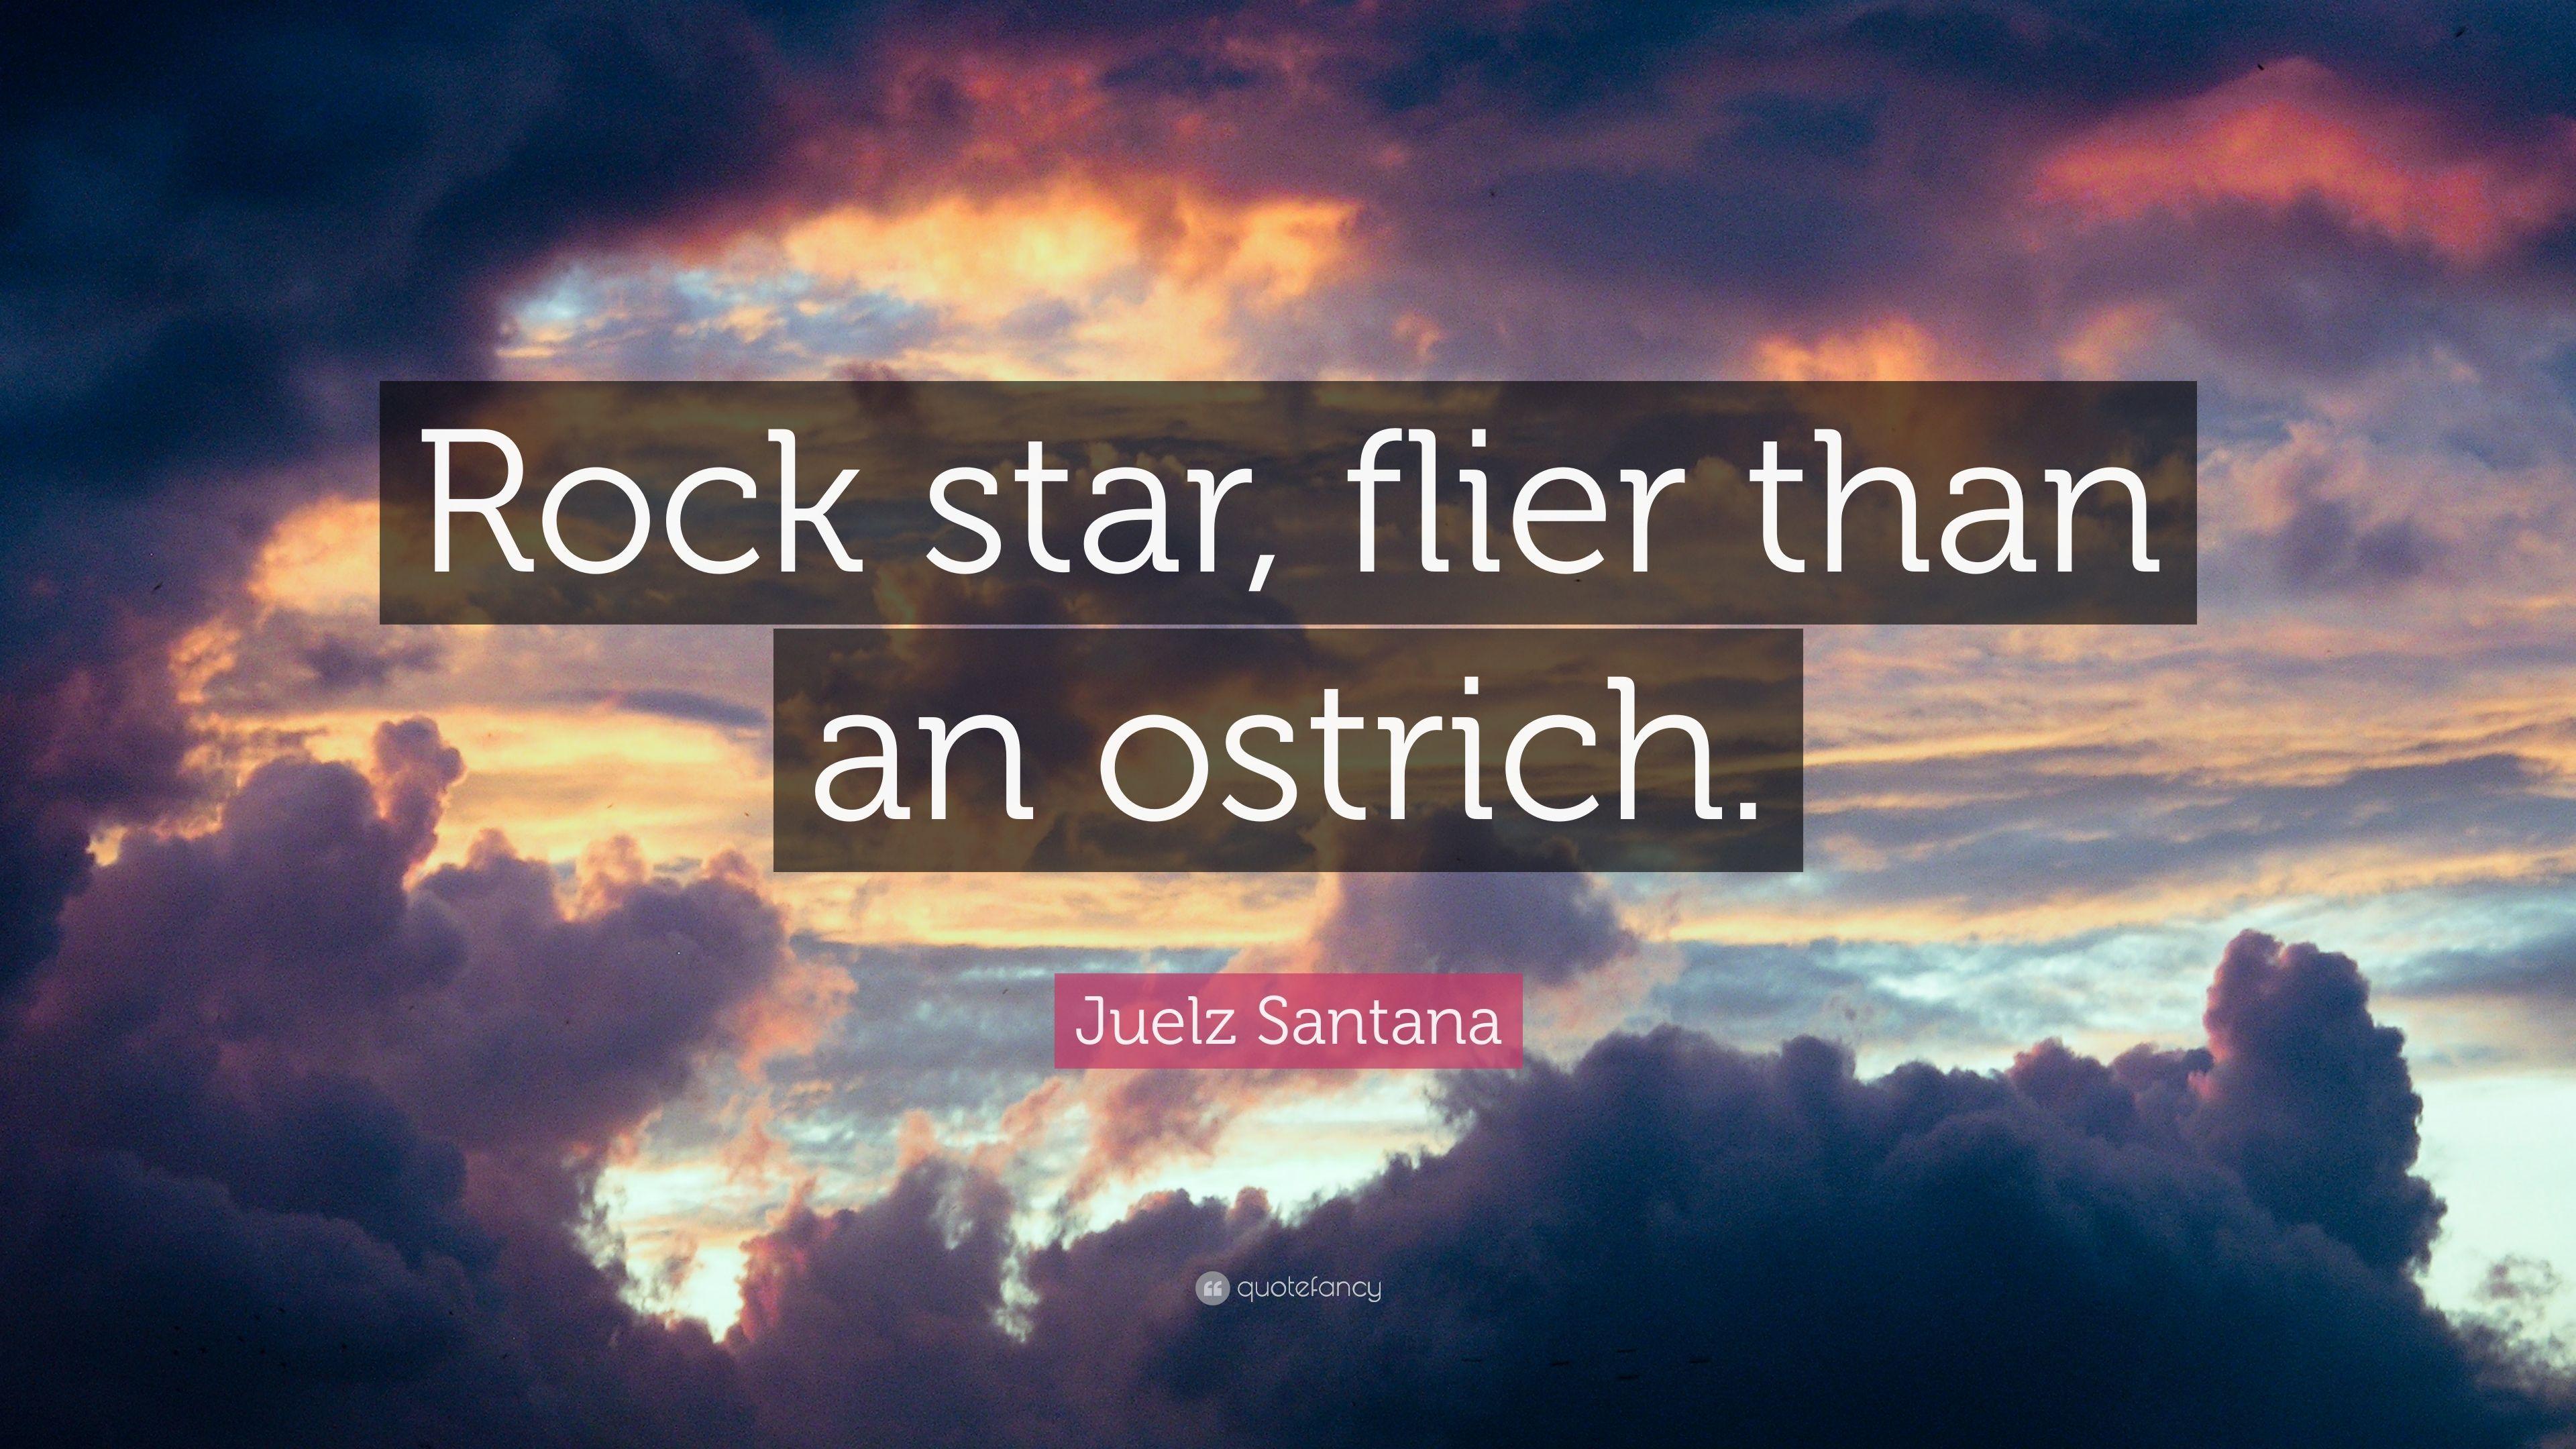 Juelz Santana Quote: “Rock star, flier than an ostrich.” 7